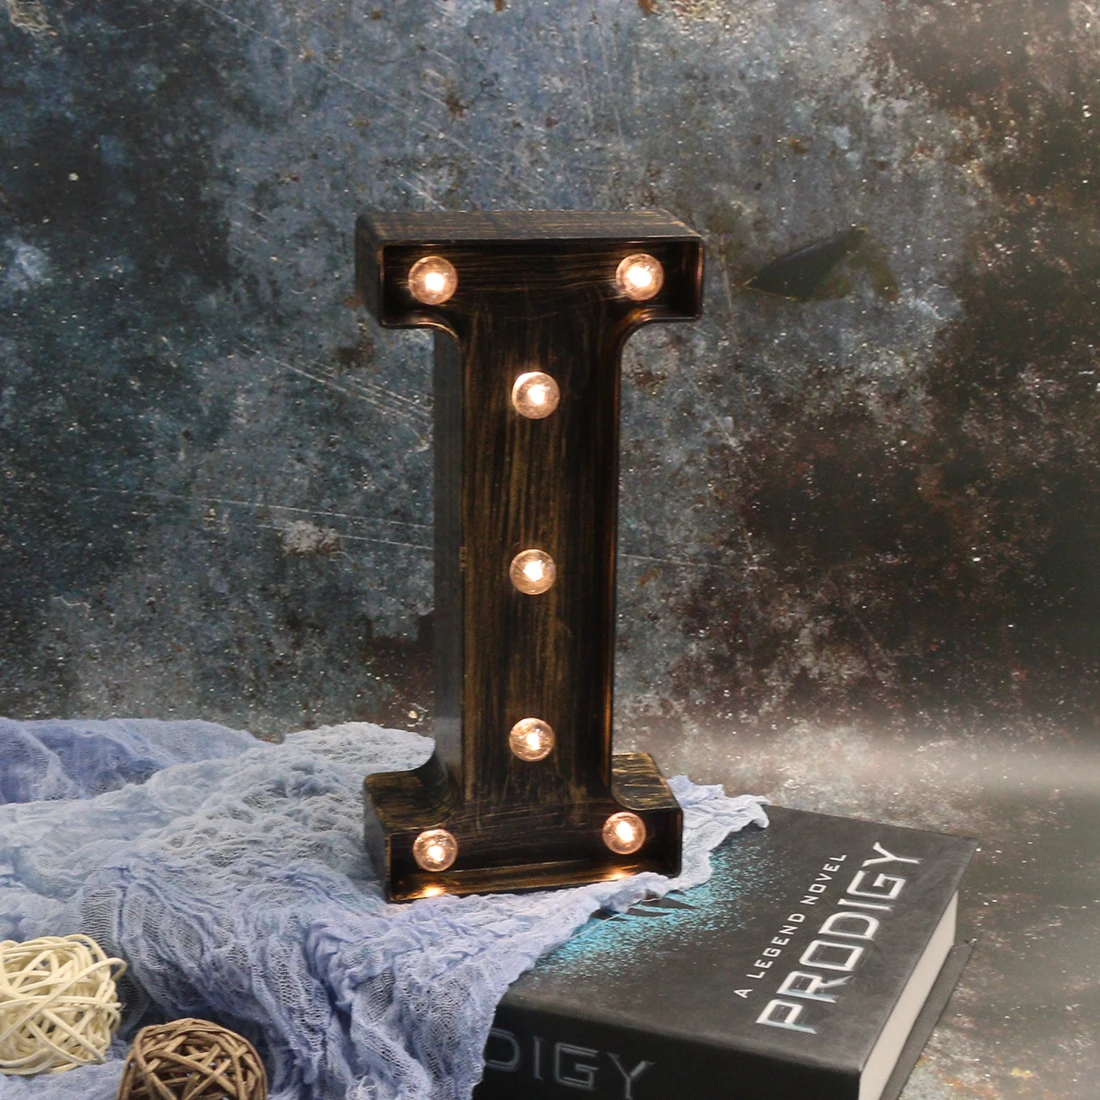 Светодиодный Светодиодный светильник в виде буквы 26, светодиодный ночник, промышленный стиль, праздничный декор, настенные светильники для дома, спальни, освещение, 3D Алфавит, кафе, бар, лампа